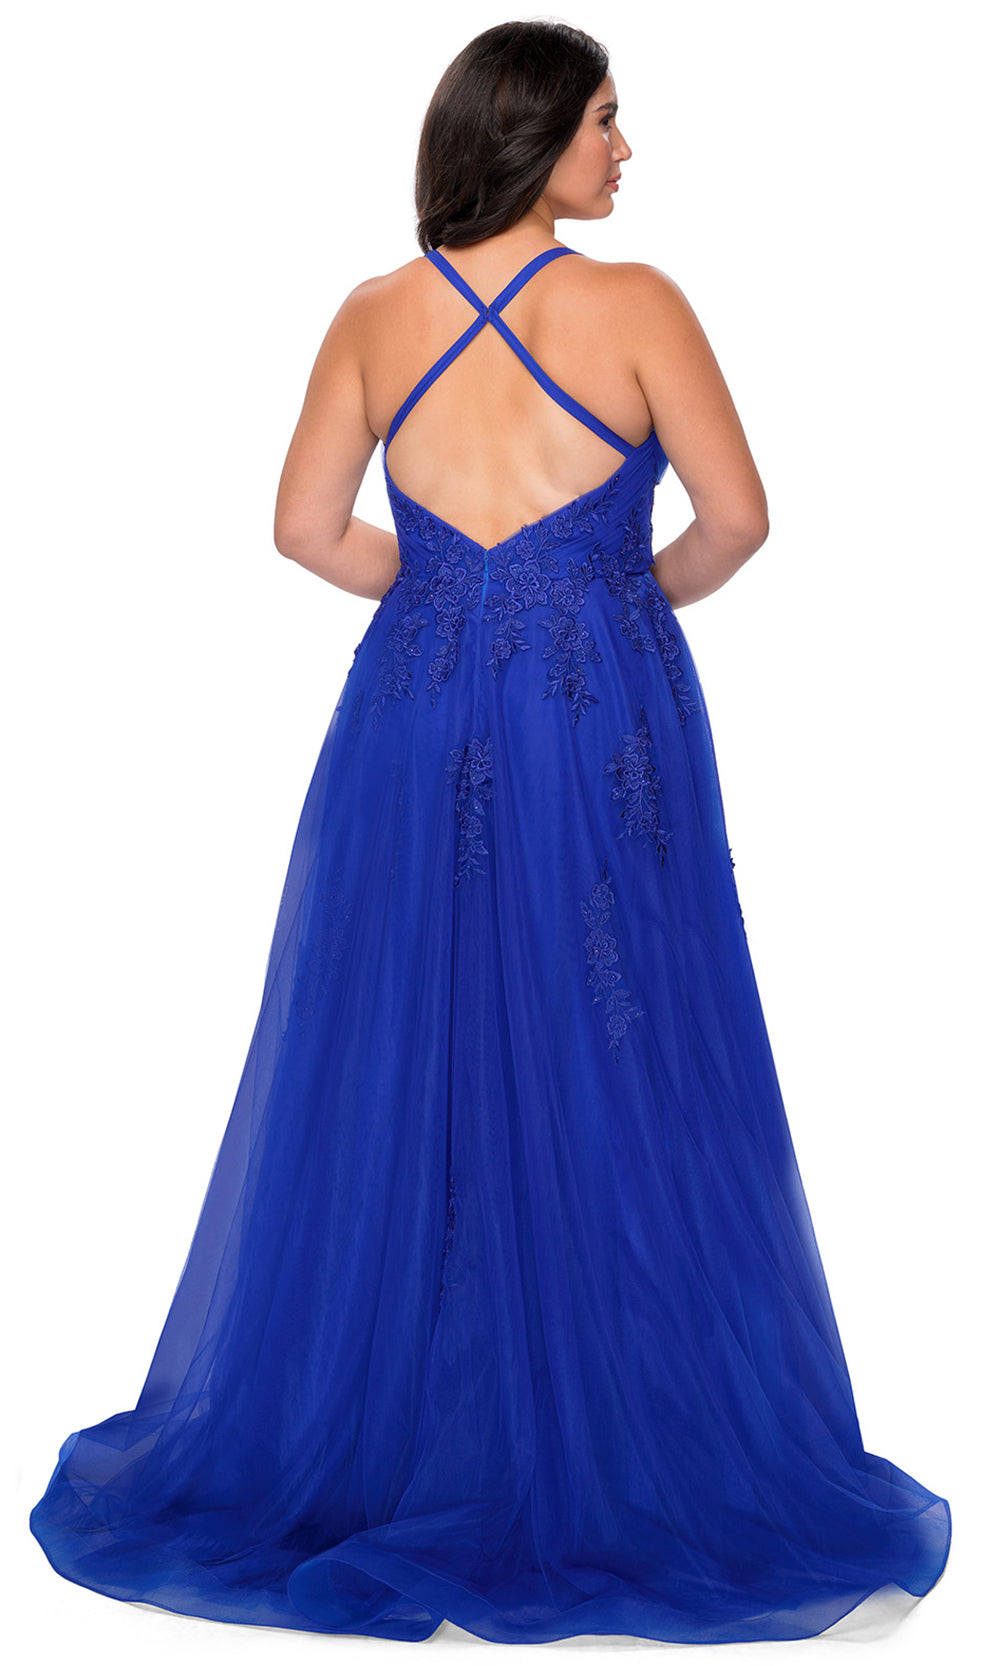 La Femme - 29021 Embroidered High Slit A-Line Dress In Blue